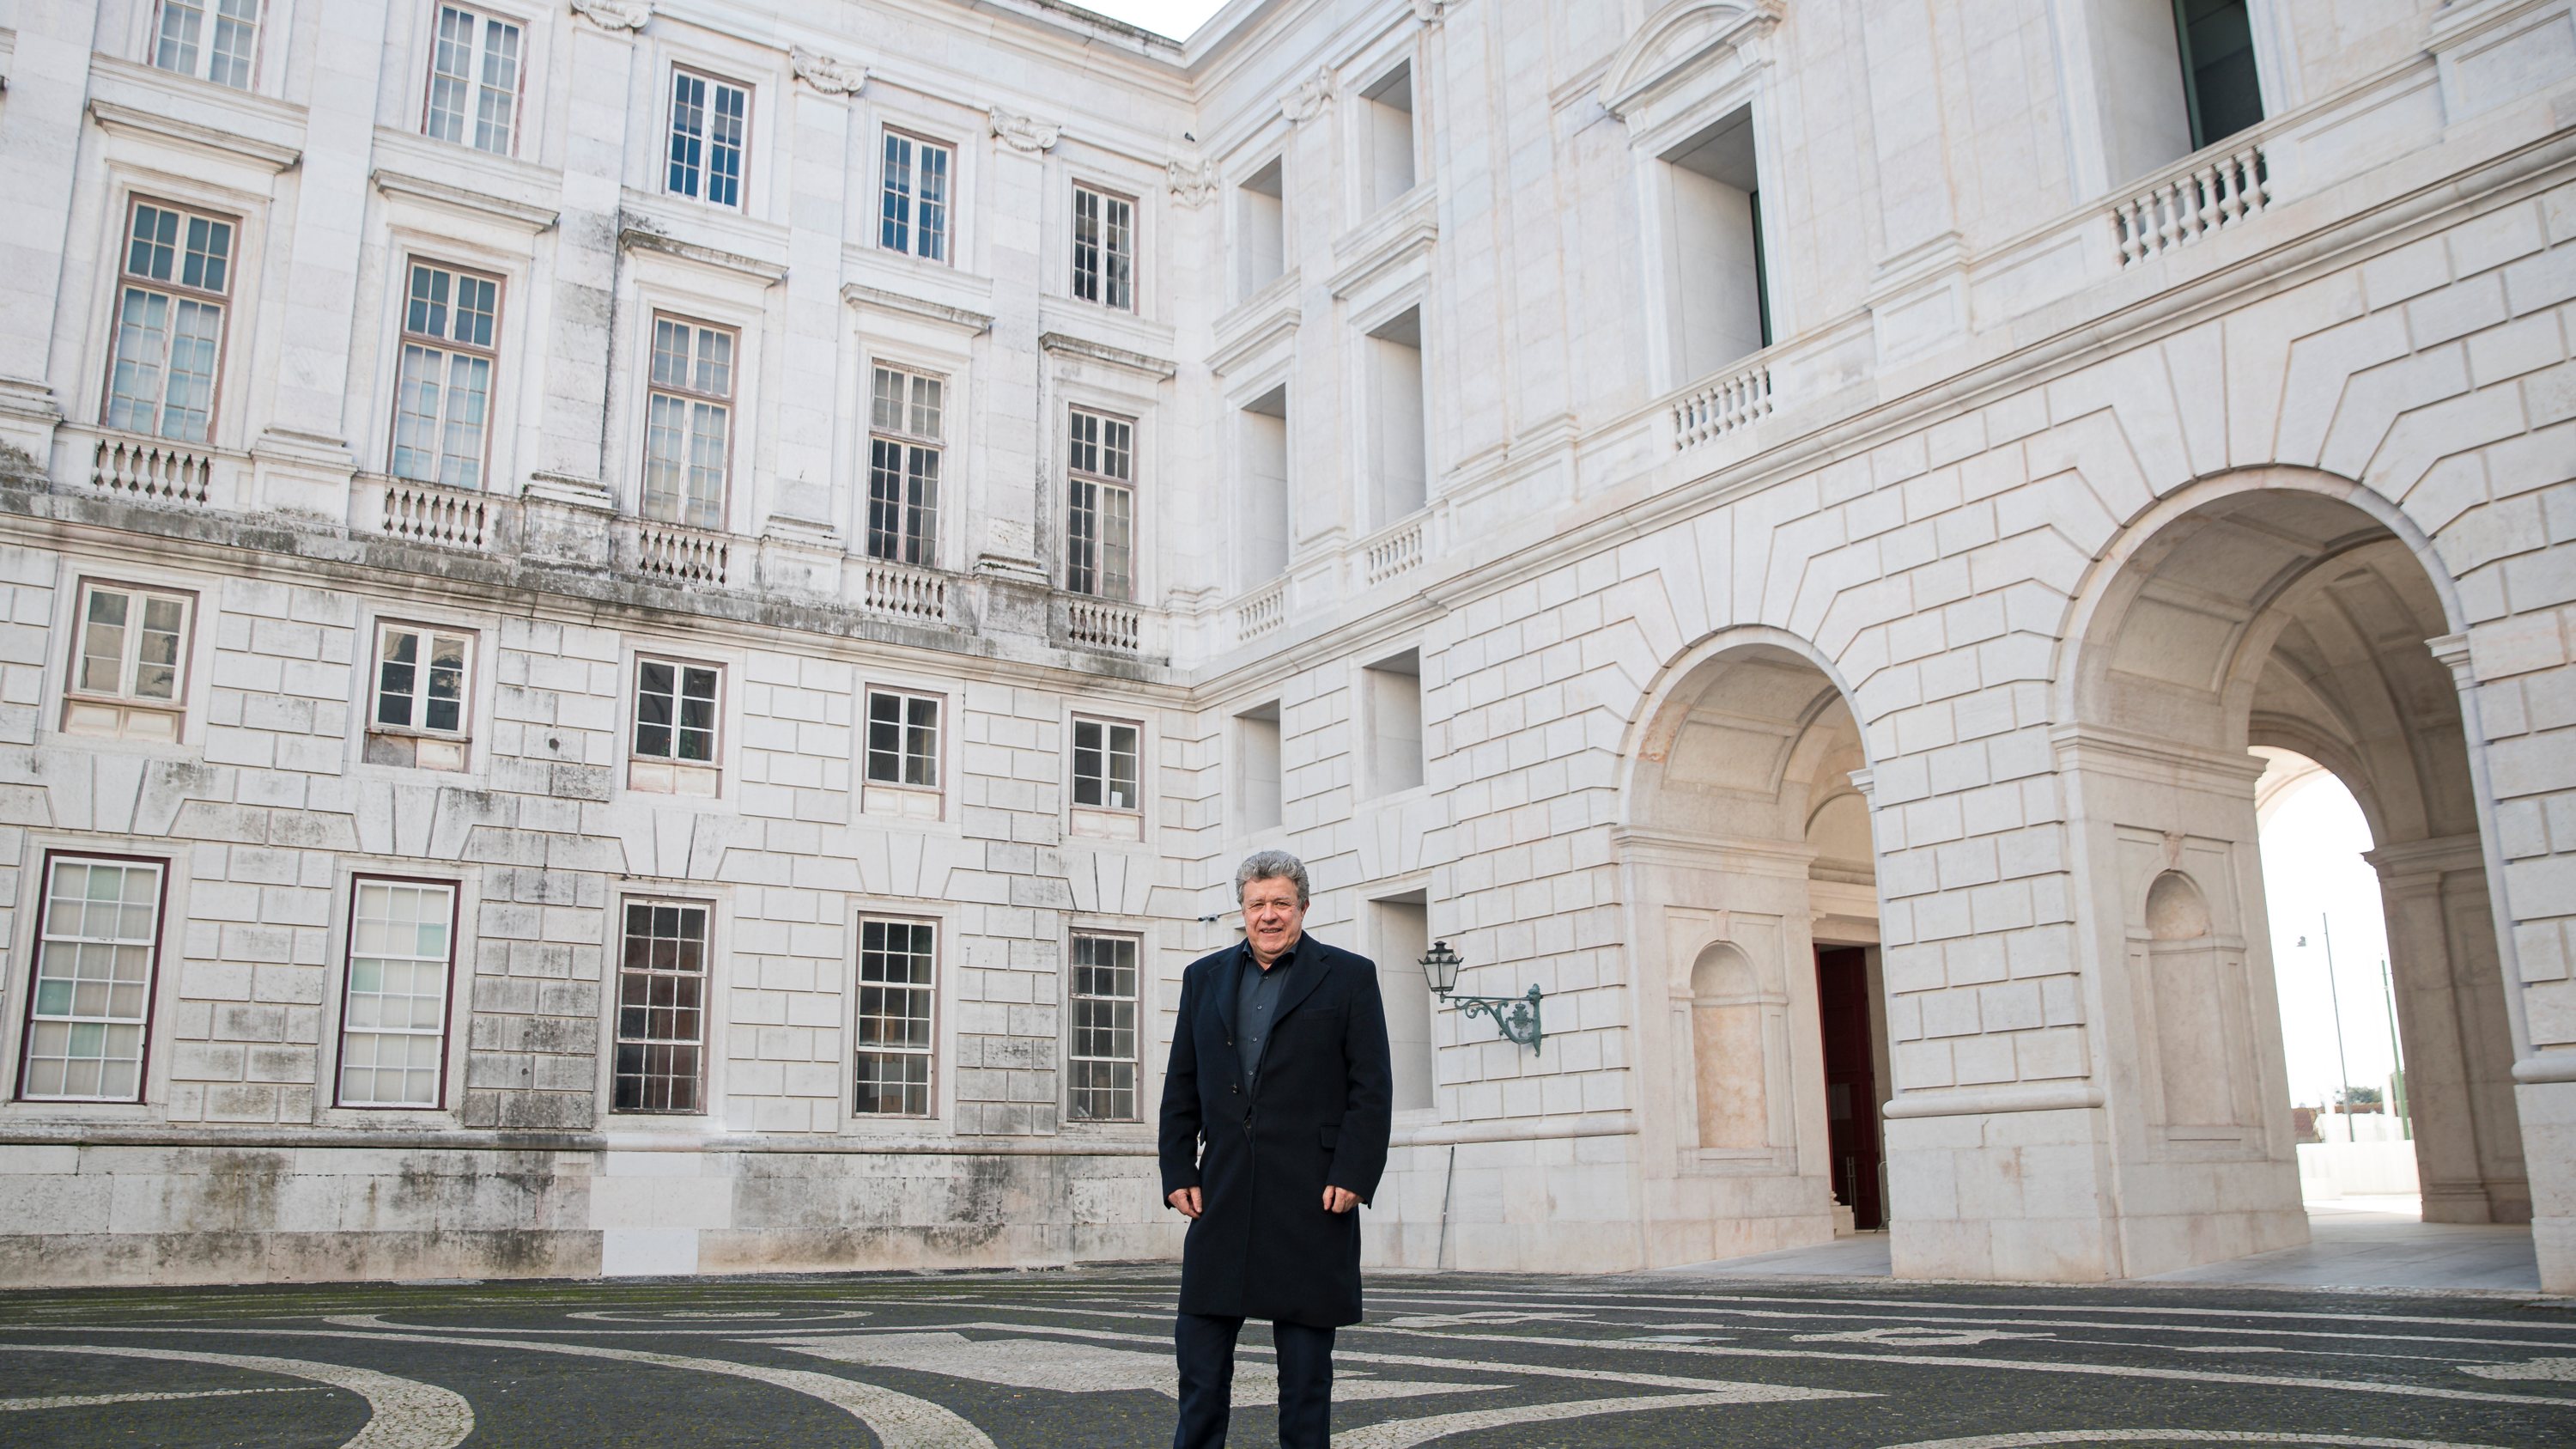 João Carlos dos Santos, director geral do património fotografado no Palácio da Ajuda. Lisboa, 16 de Dezembro de 2021. FILIPE AMORIM/OBSERVADOR